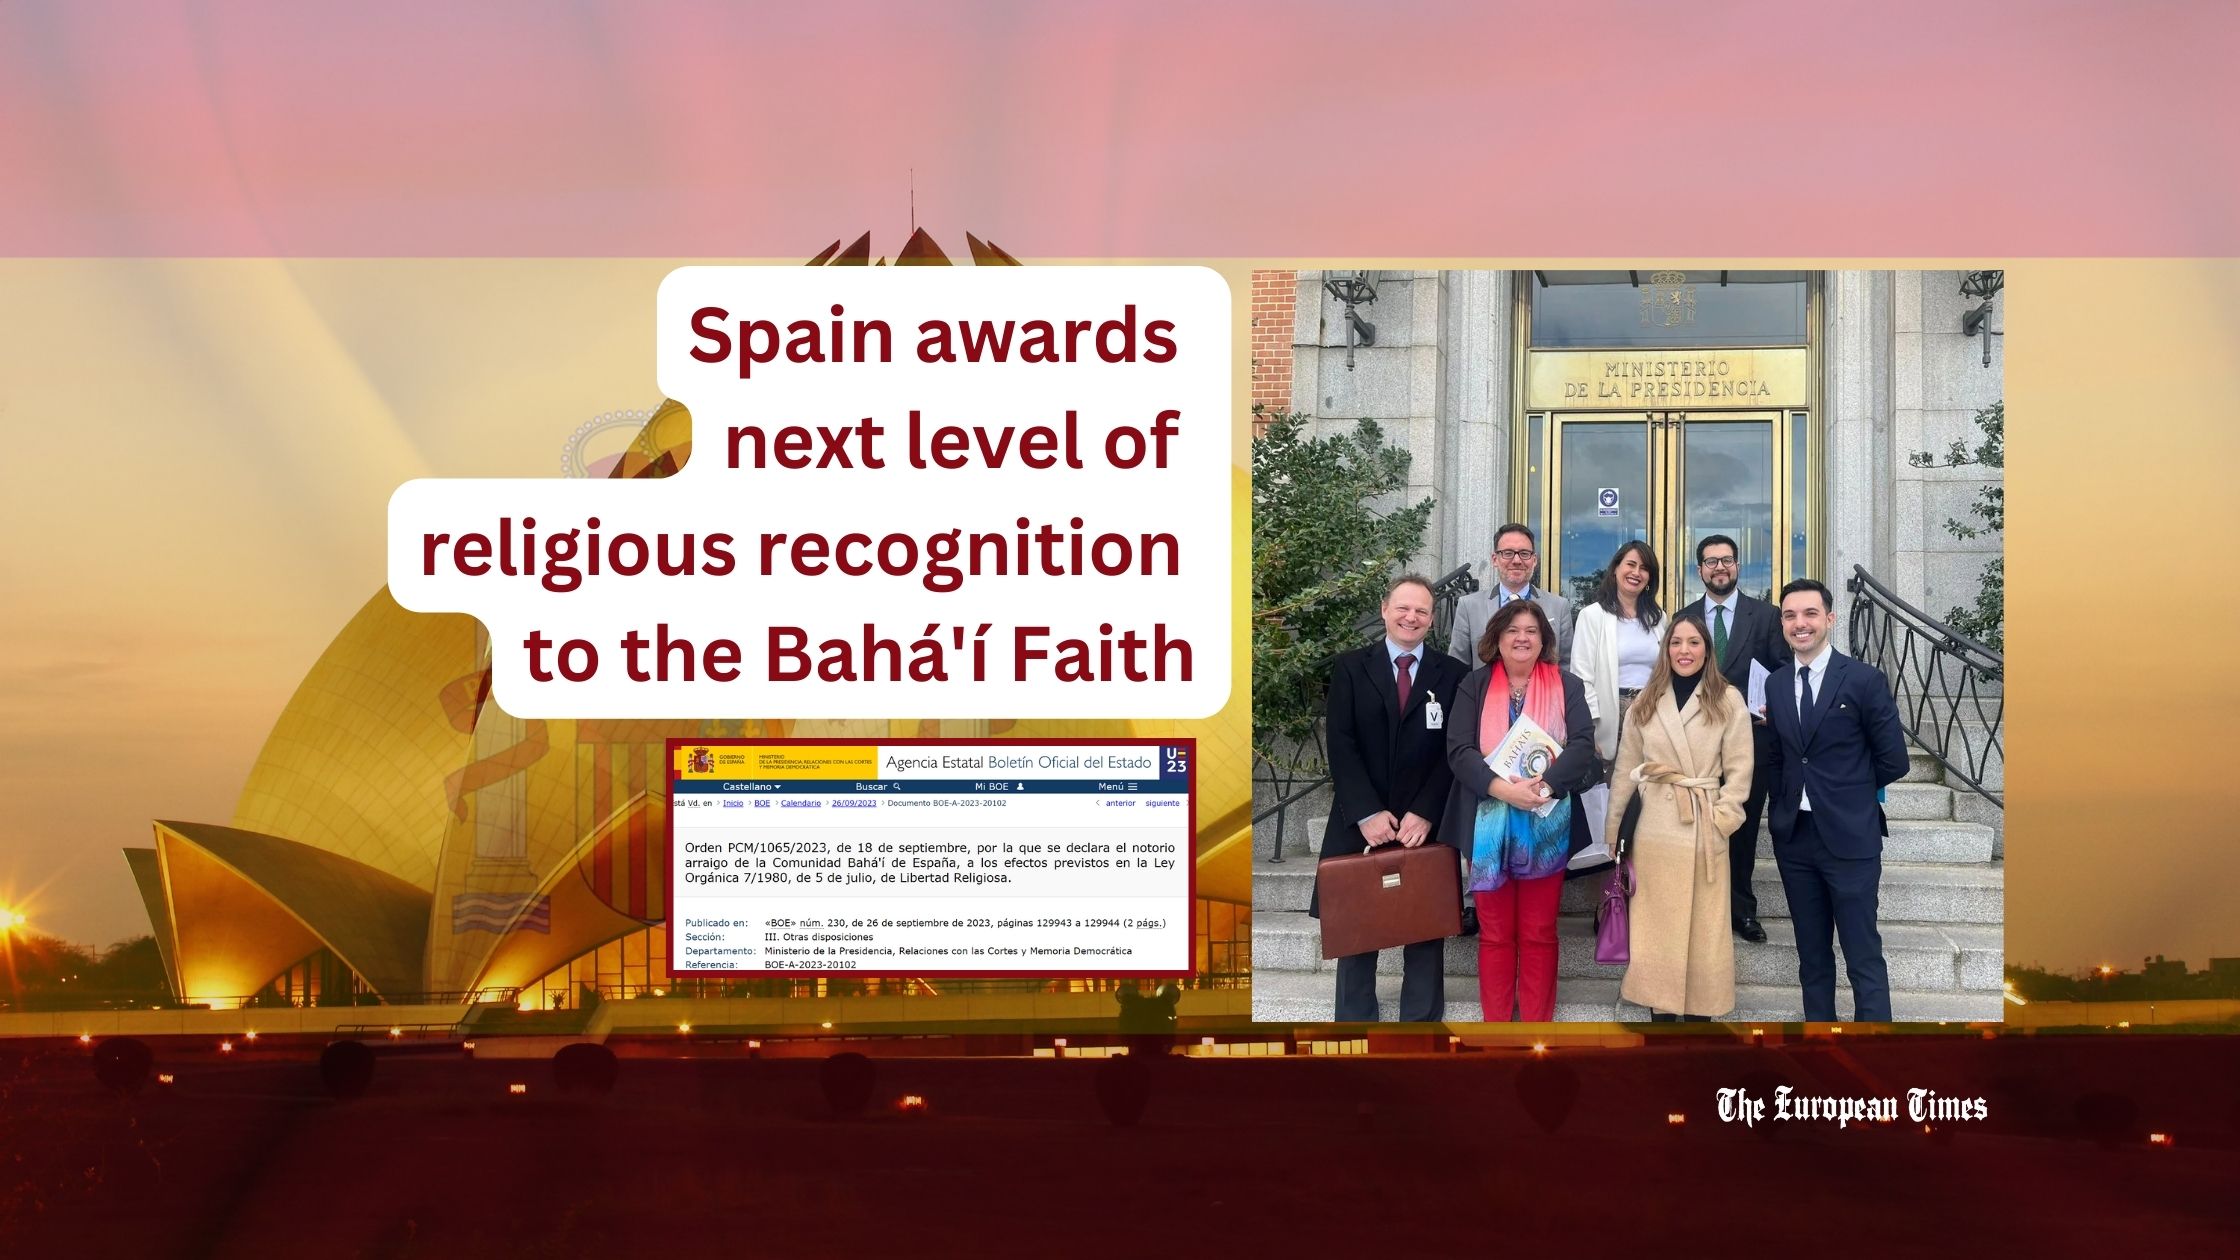 Spain awards next level of religious recognition to the Bahá'í Faith